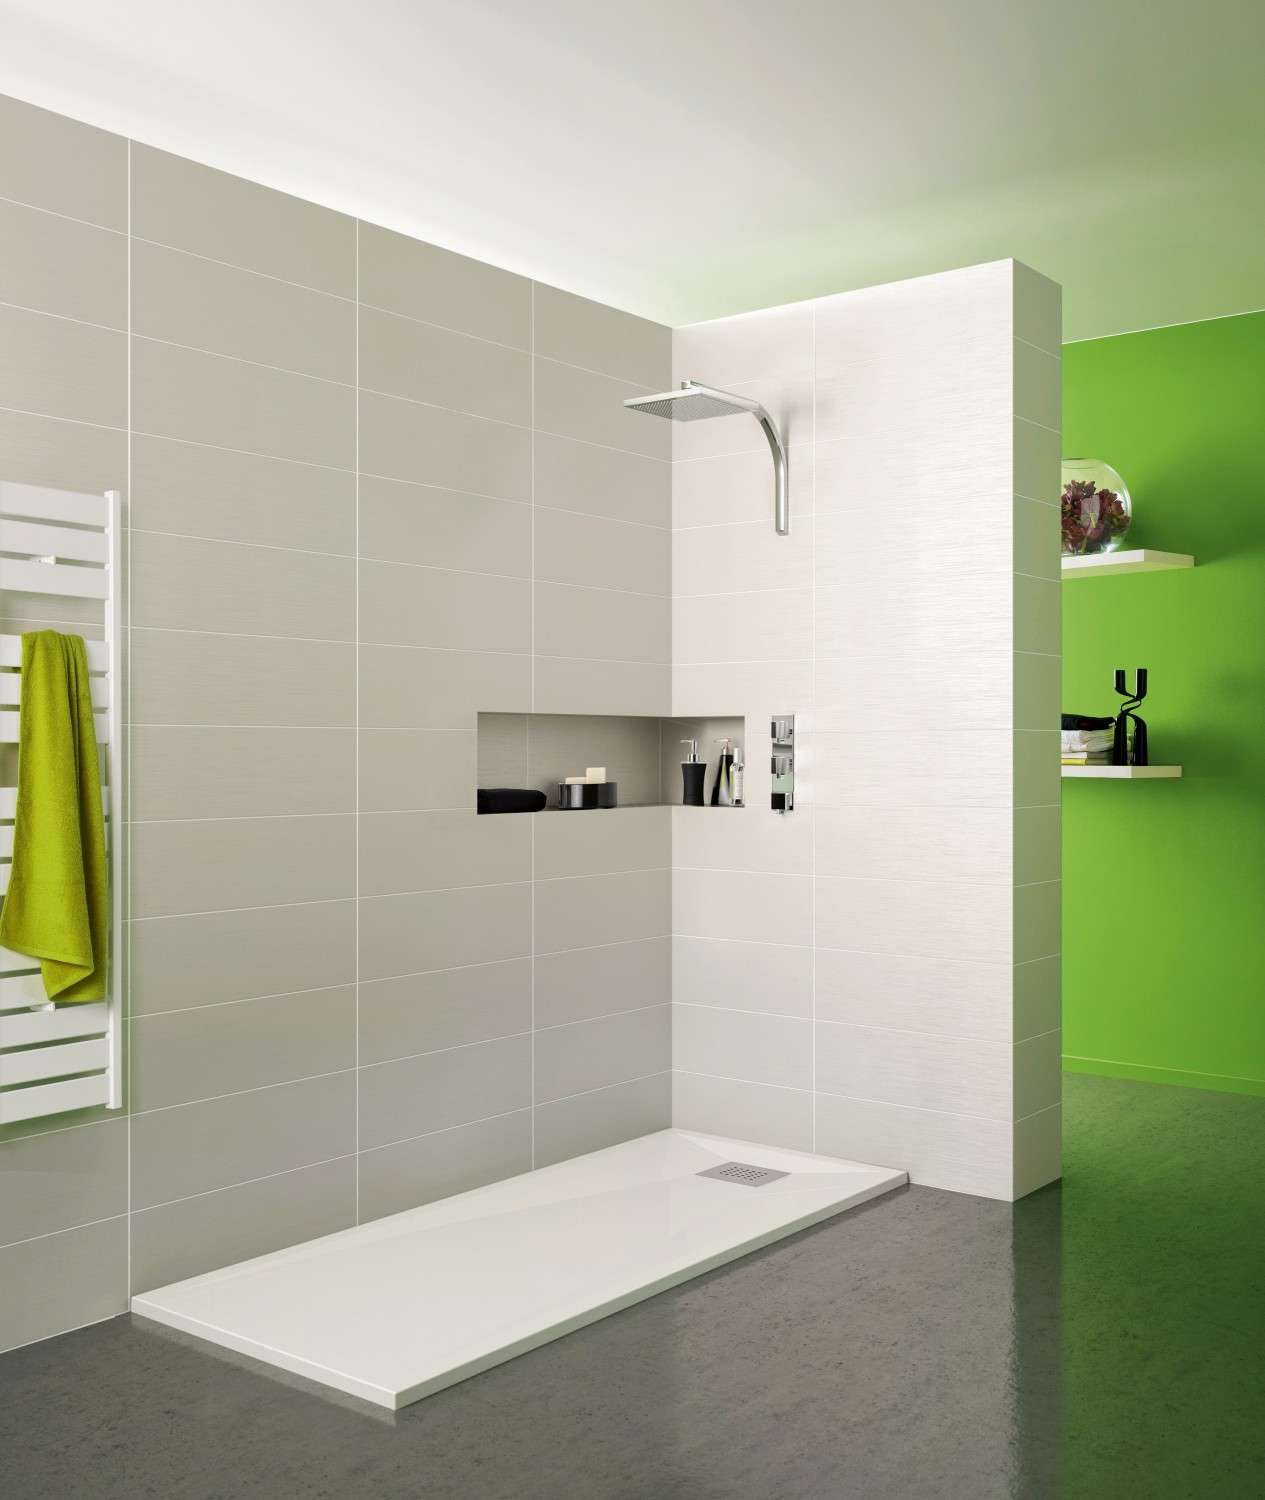 Rund ums Haus Wohlfühleffekt garantiert - Flache Dusche, hoher Komfort mit SFA Sanibroy - News, Bild 1